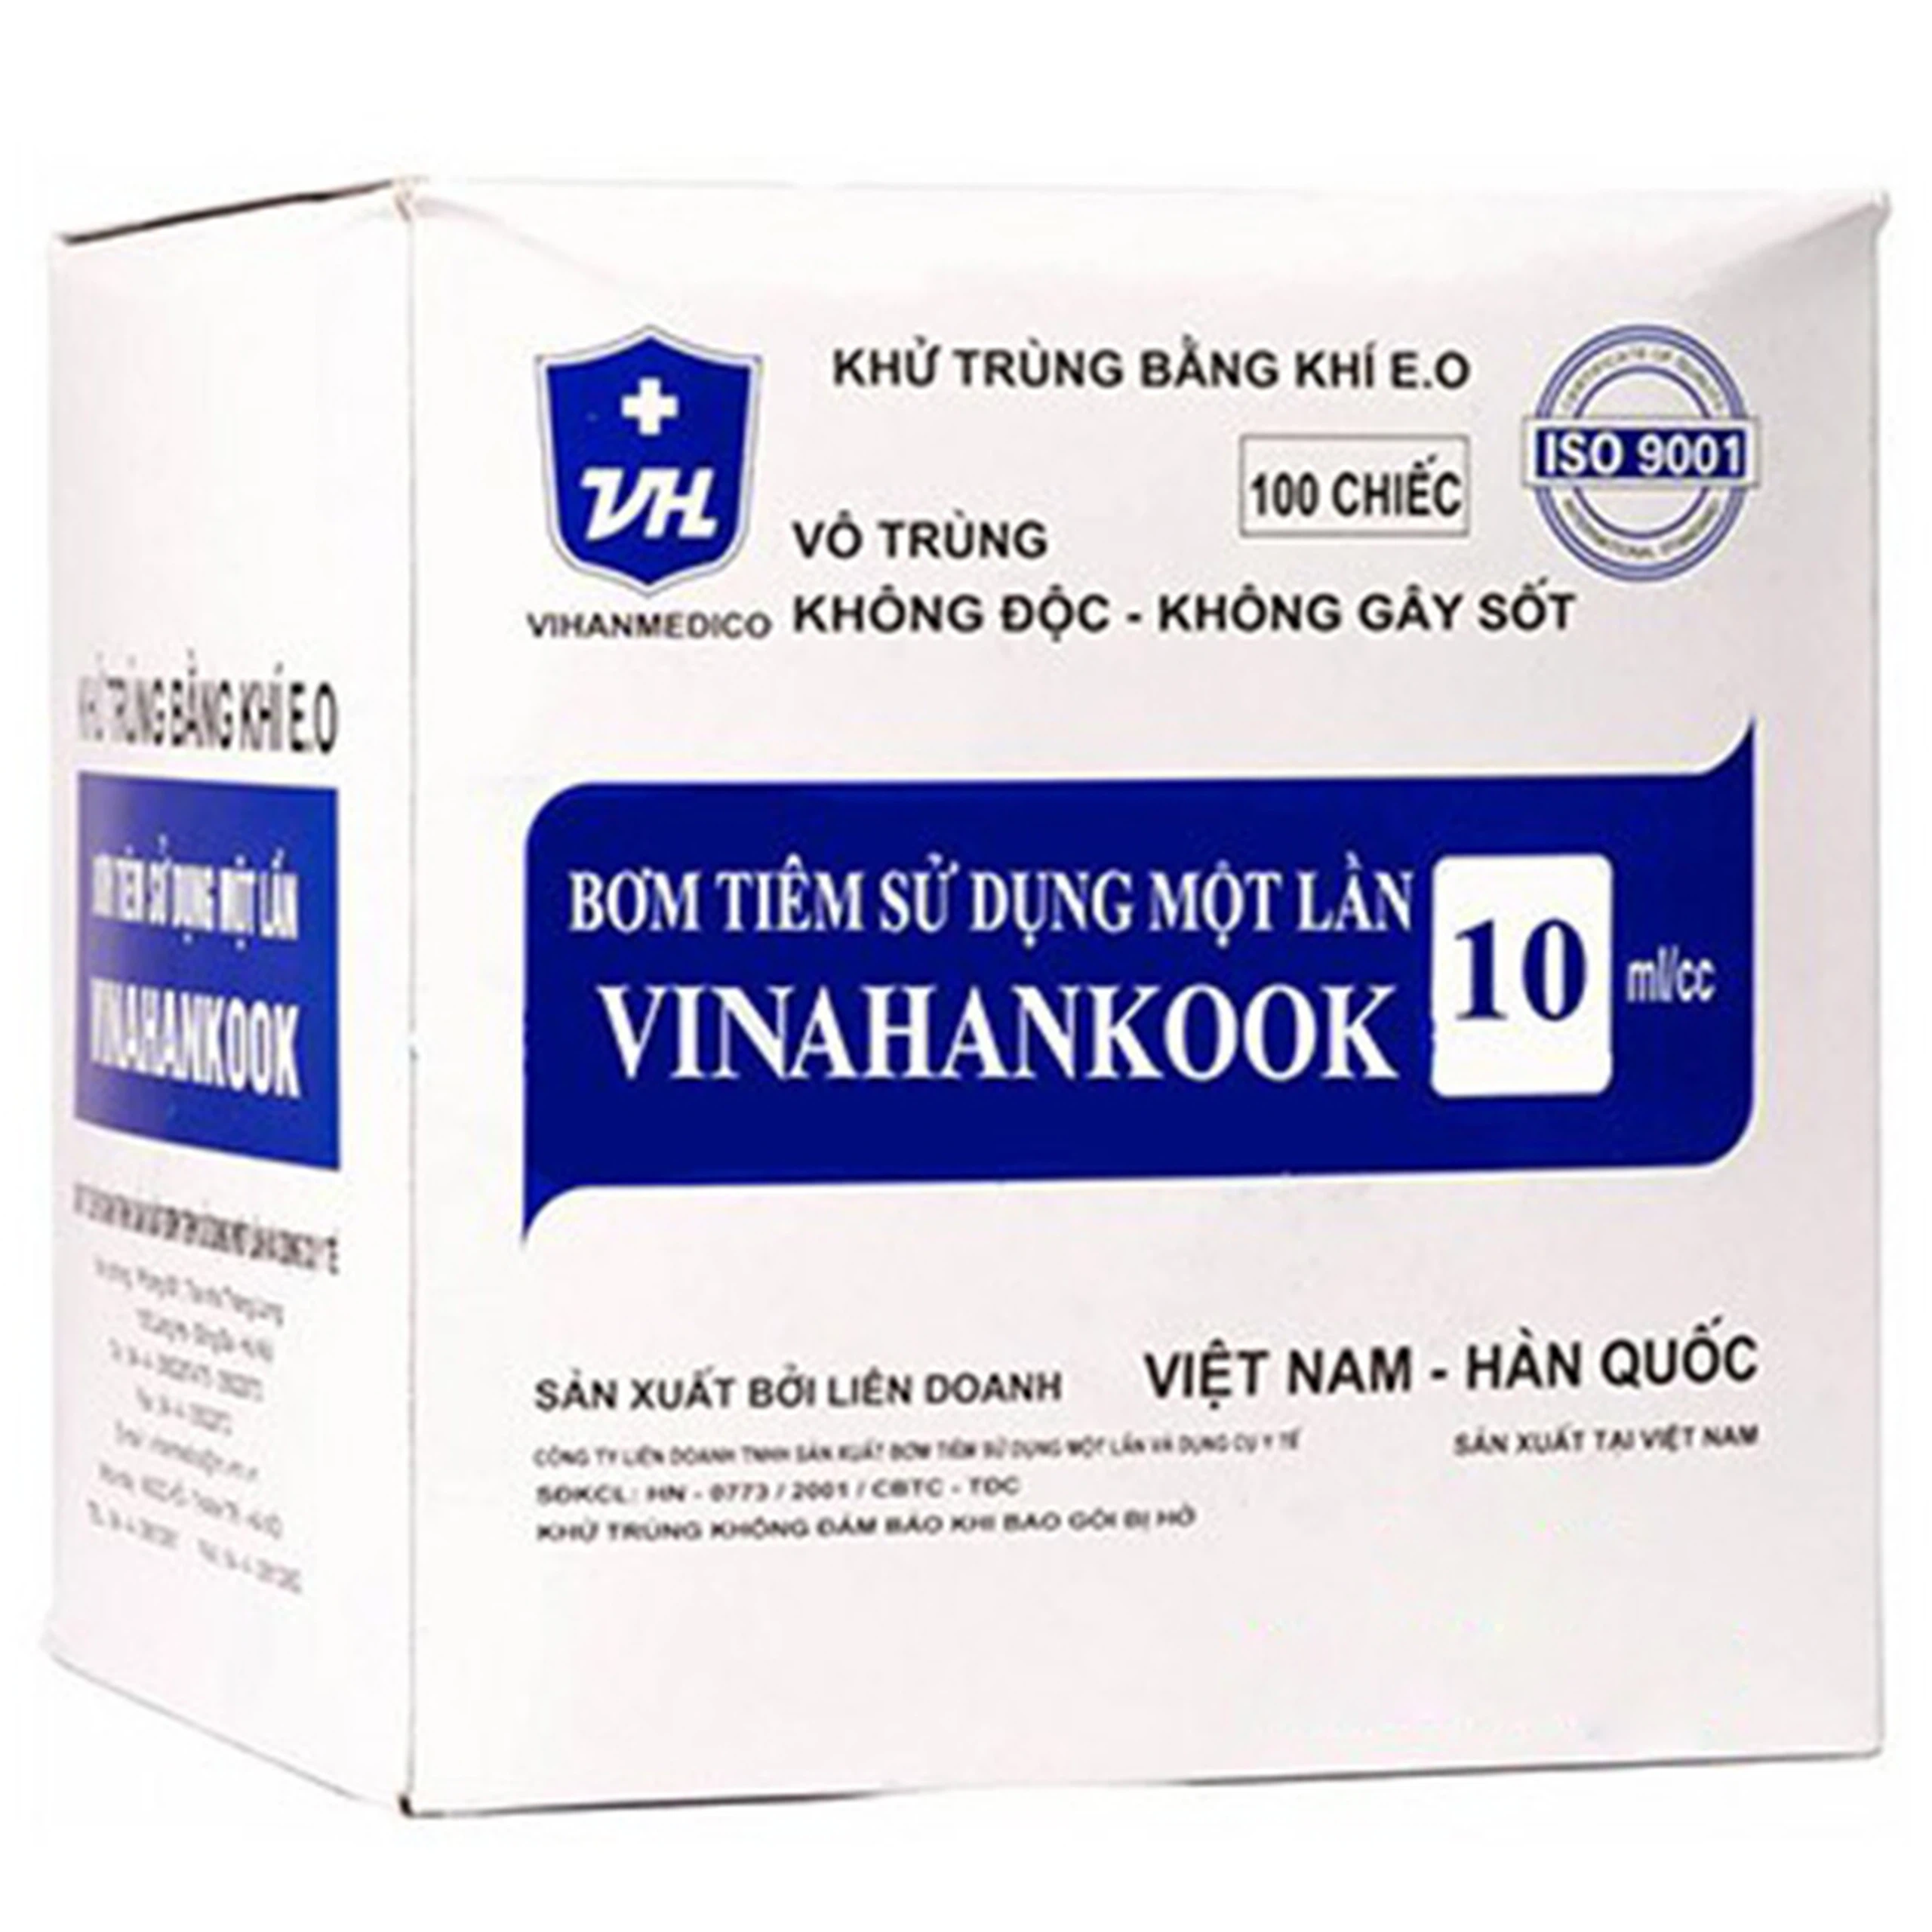 Bơm tiêm sử dụng một lần Vinahankook 10ml/cc được khử trùng bằng khí E.O (100 chiếc)